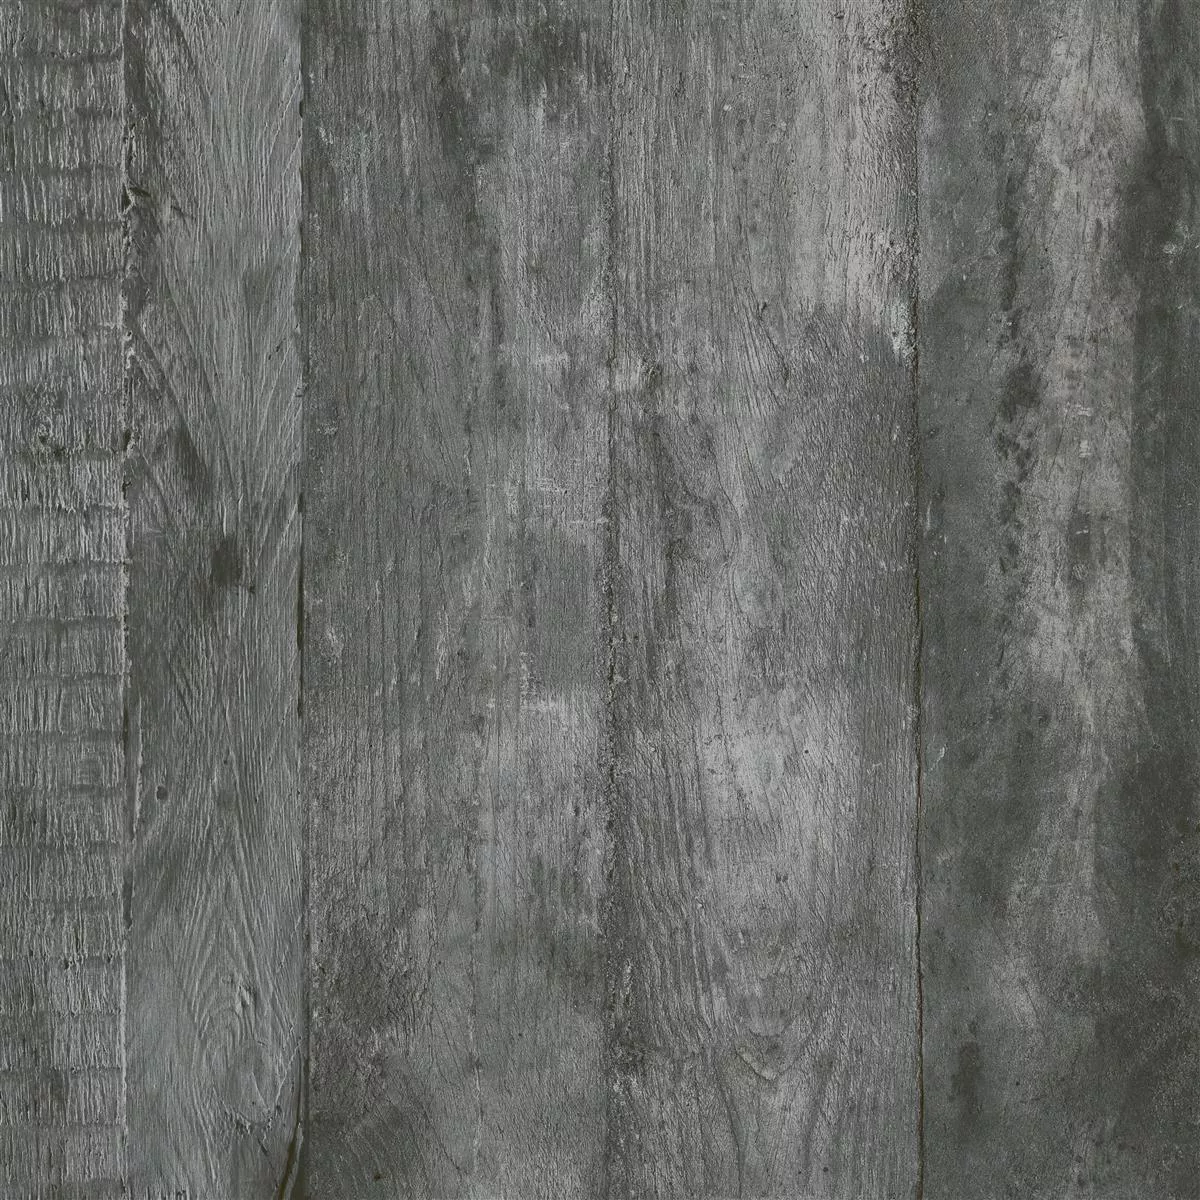 Próbka Płytki Podłogowe Gorki Wygląd Drewna 60x60cm Oszklony Graphit